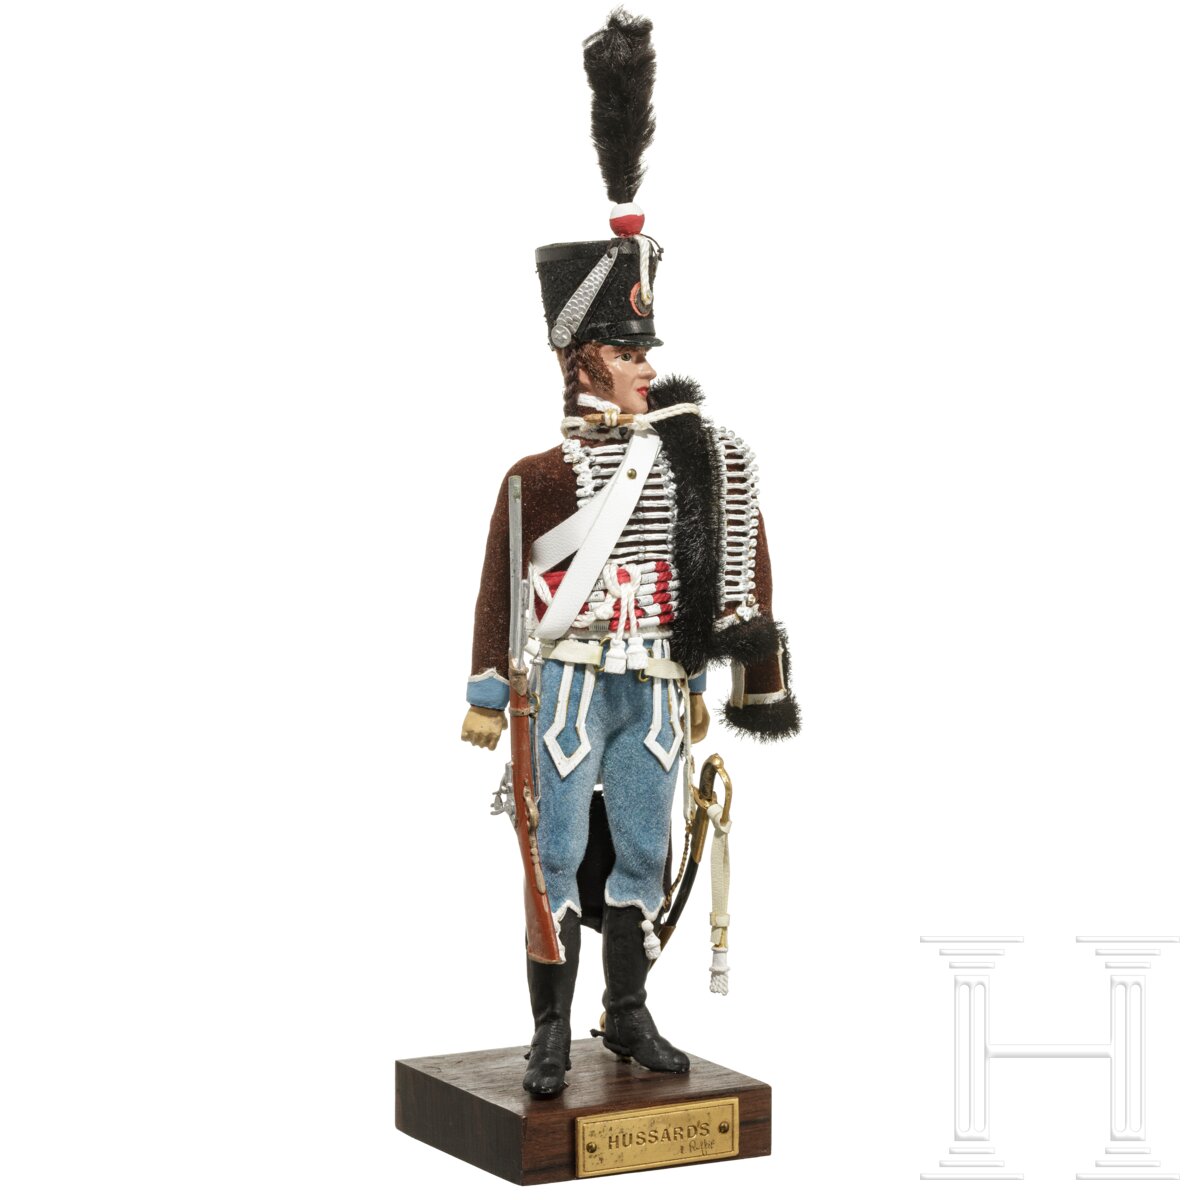 Husar um 1808 - Uniformfigur von Marcel Riffet, 20. Jhdt. - Image 2 of 6